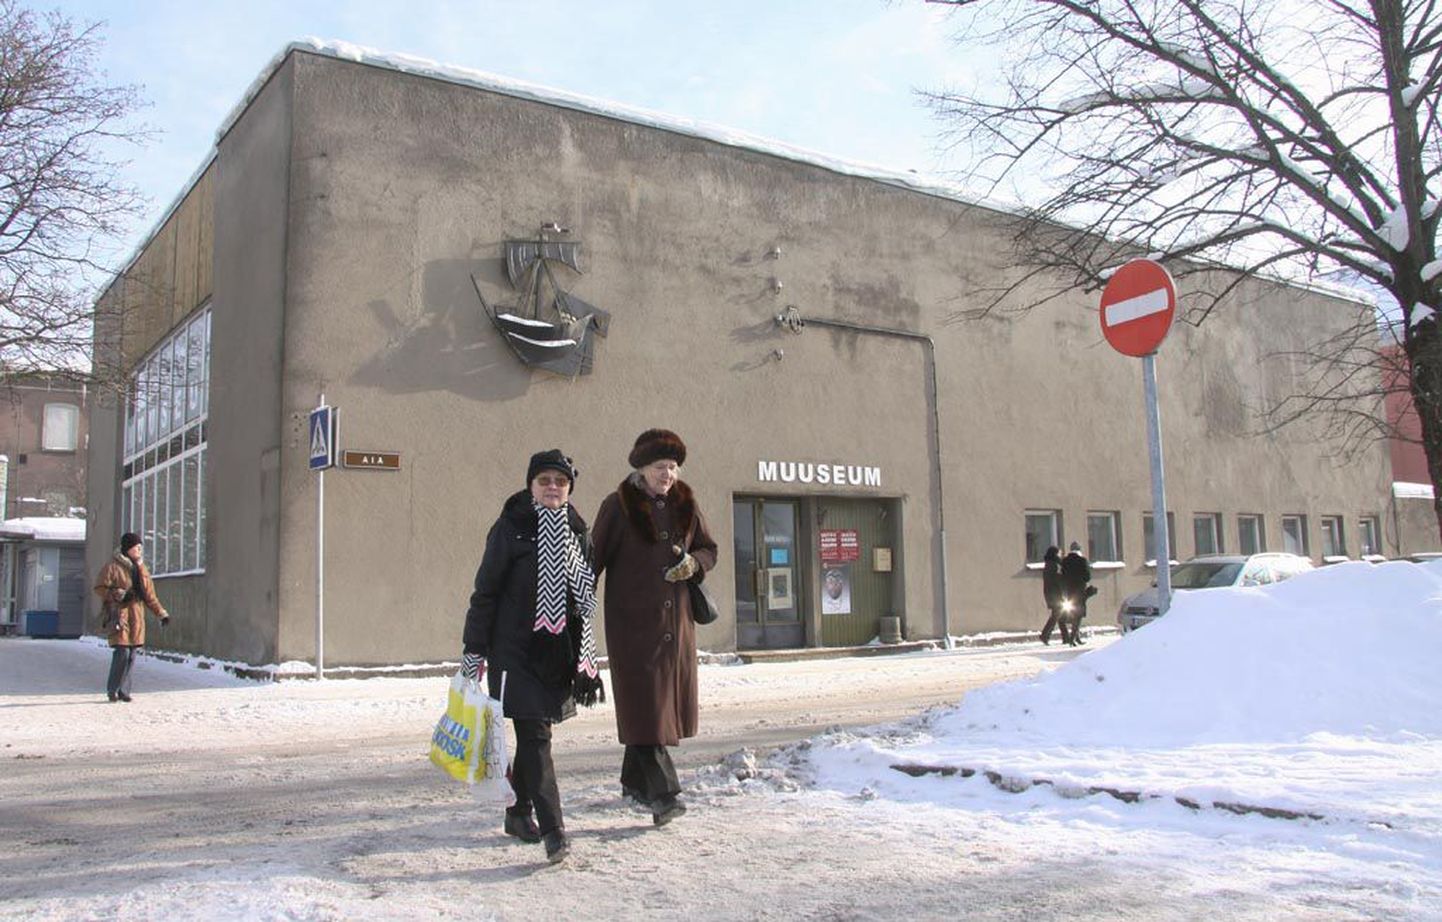 Ühendmuuseumi moodustamise järel kaotaks Pärnu muuseum iseseisvuse.